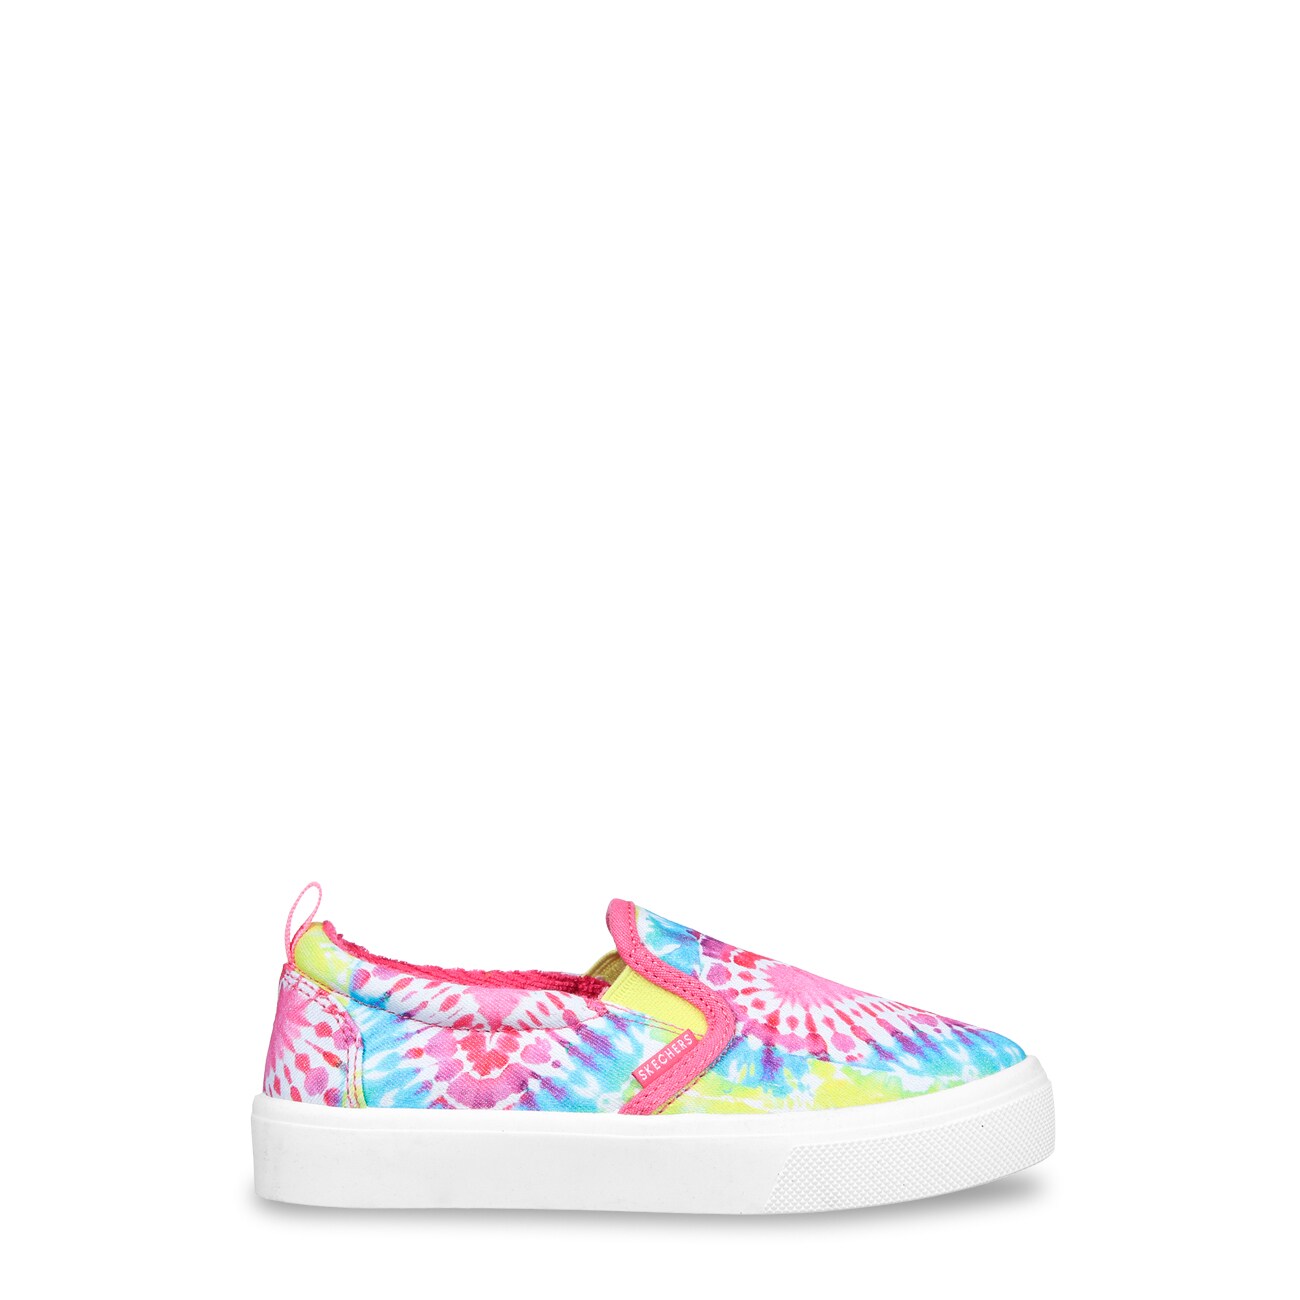 Skechers Youth Girls' Street Poppy Tie-Dye Loves Sneaker | The Shoe Company